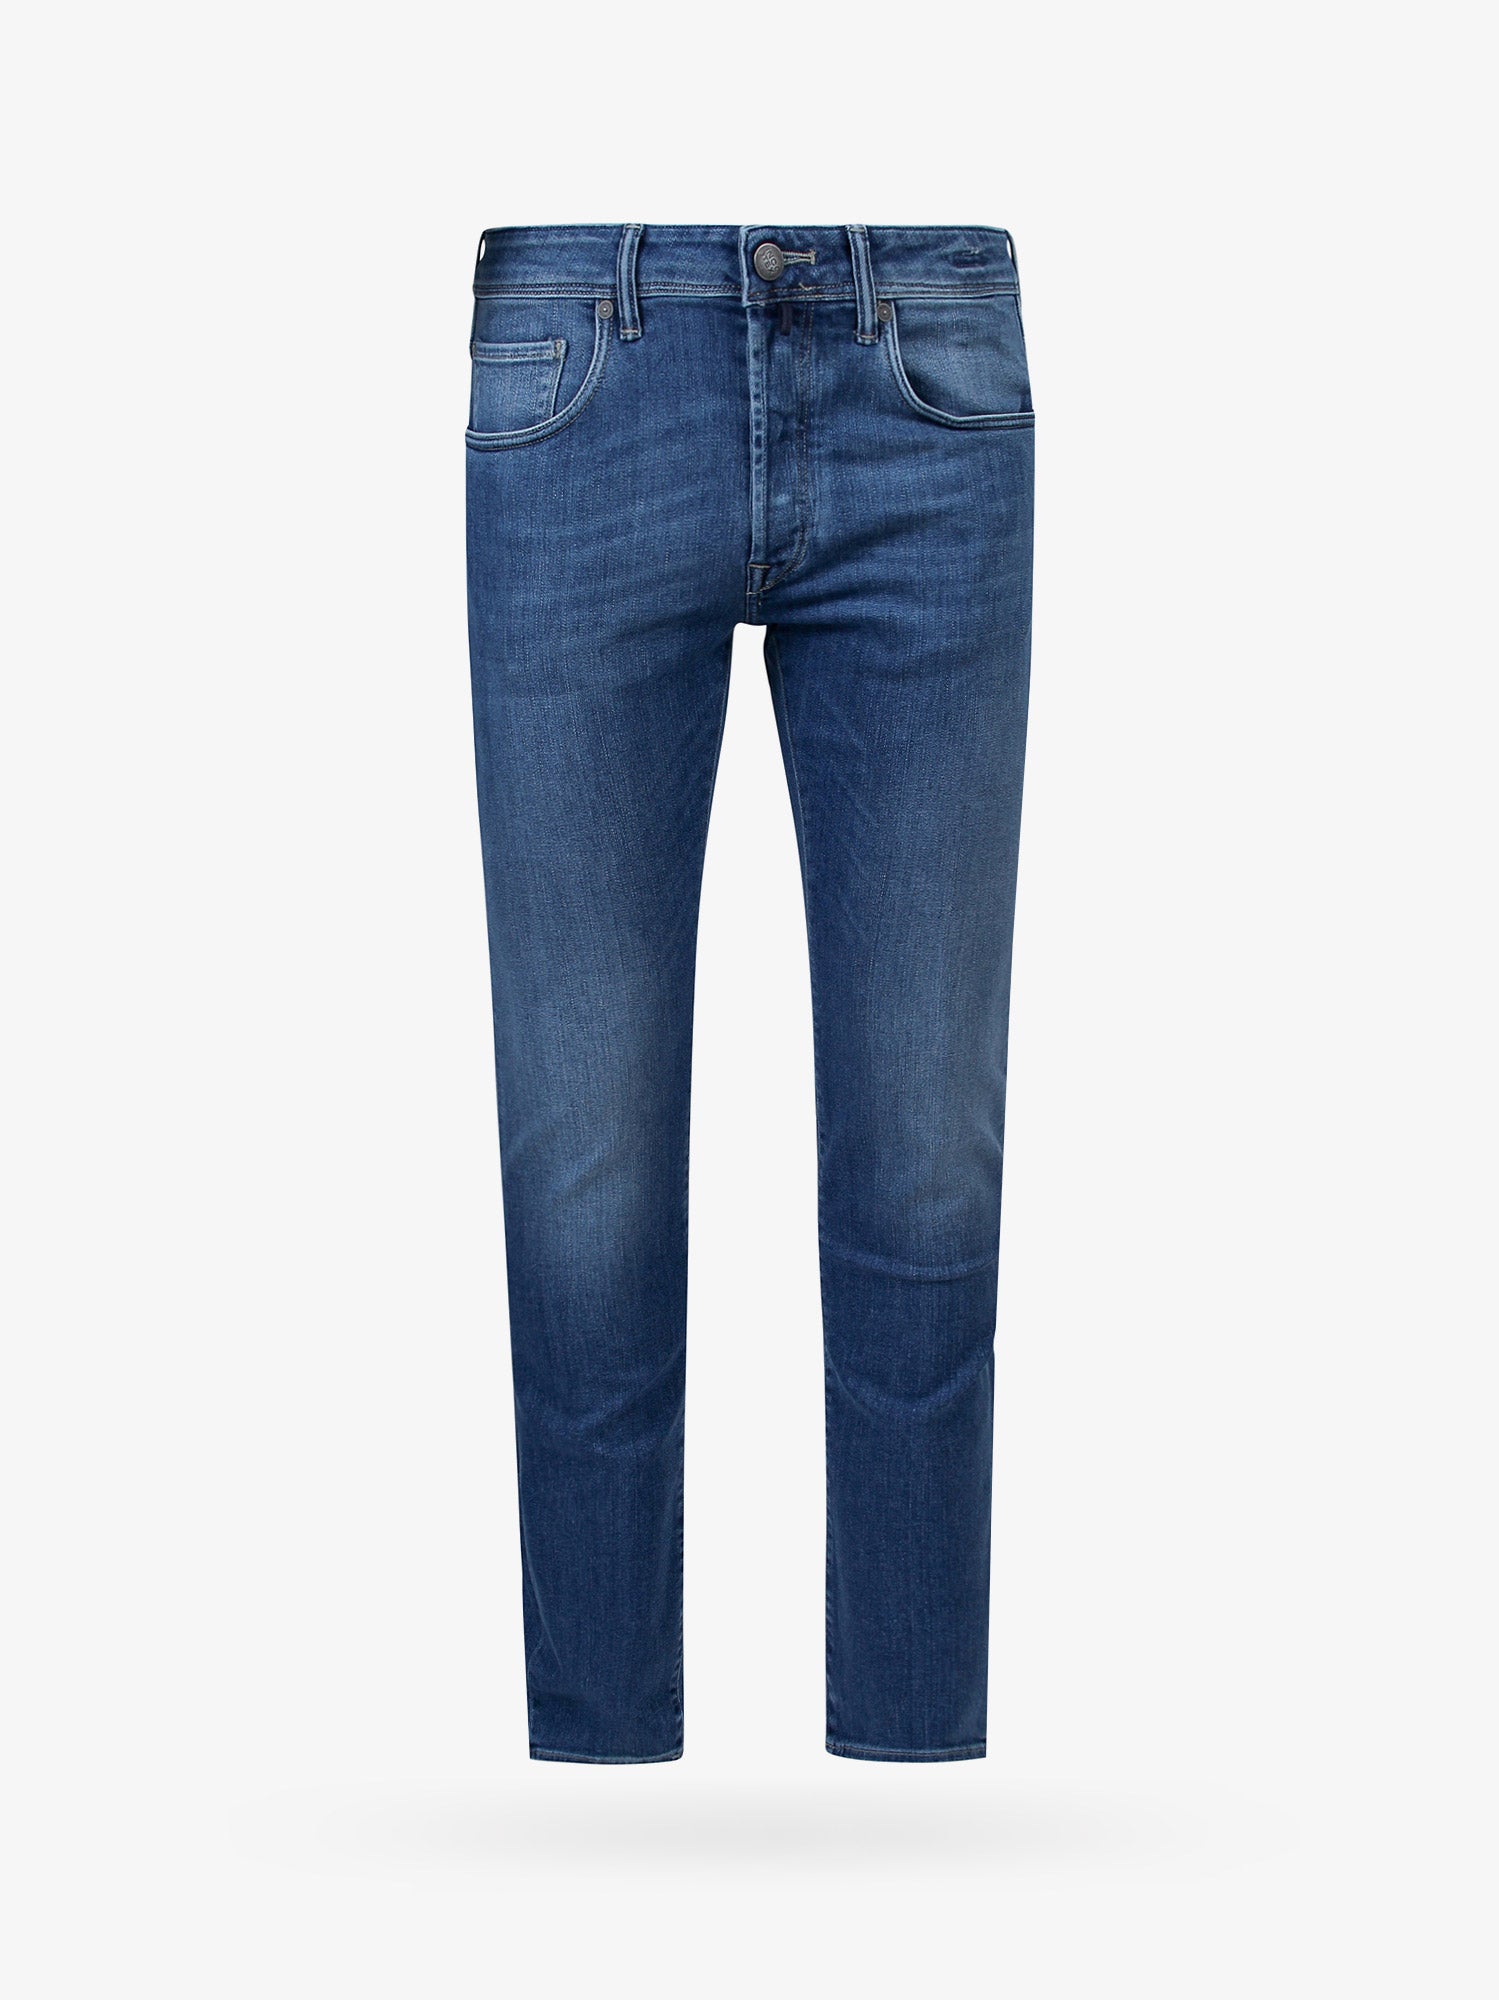 incotex jeans - man